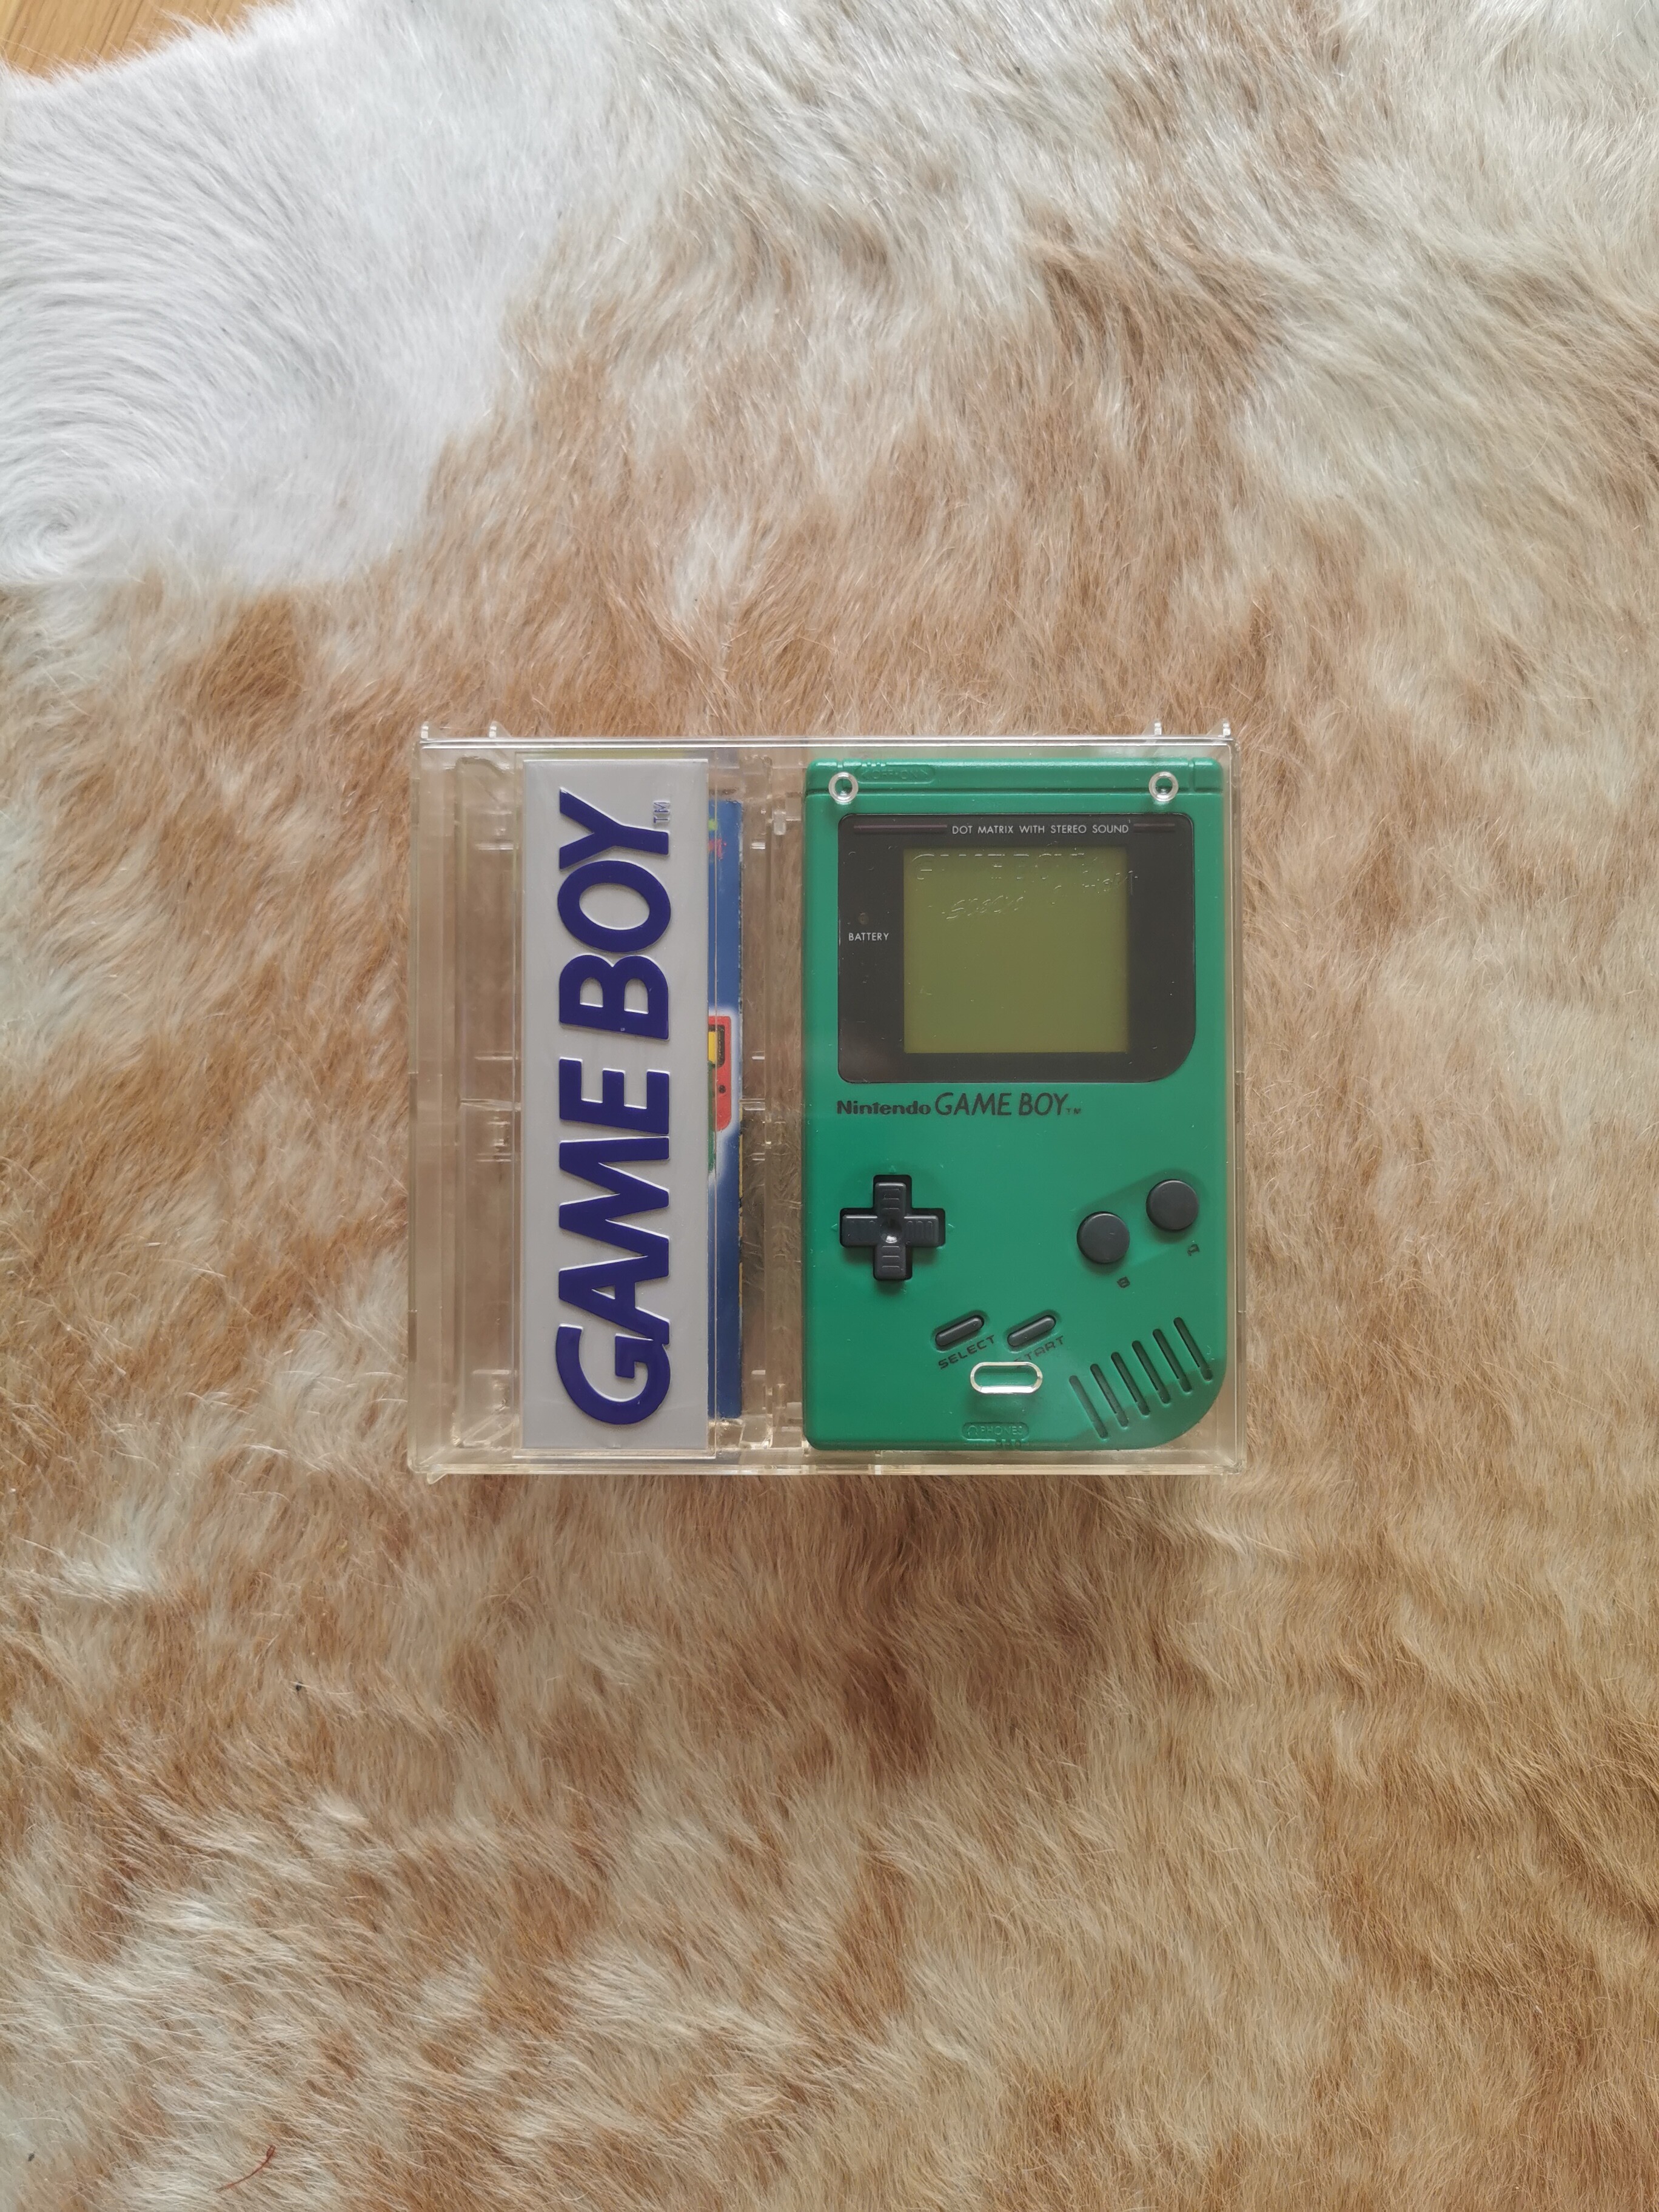  Nintendo Game Boy Crystal Case Green Case Console [NOE]